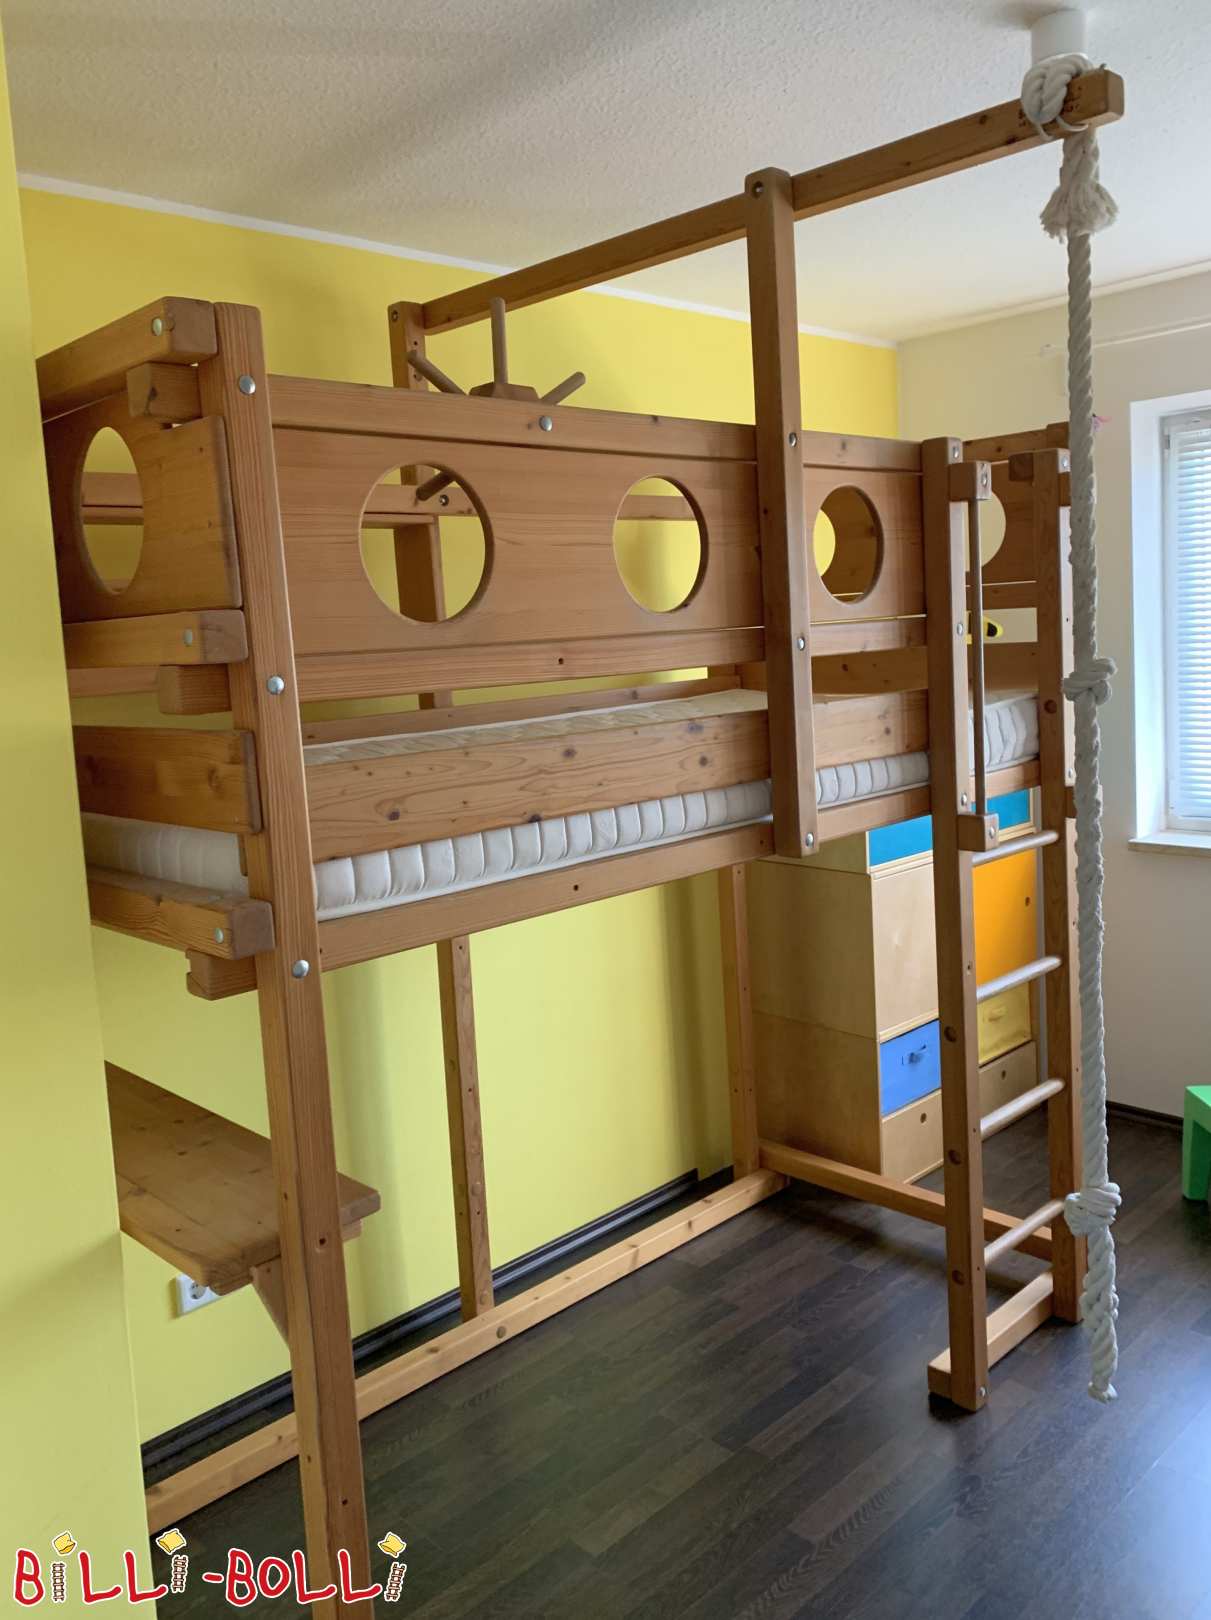 Bēniņu gulta, kas aug kopā ar bērnu, medus krāsas eļļota, Denzlingen (Kategorija: Izmantota bēniņu gulta)